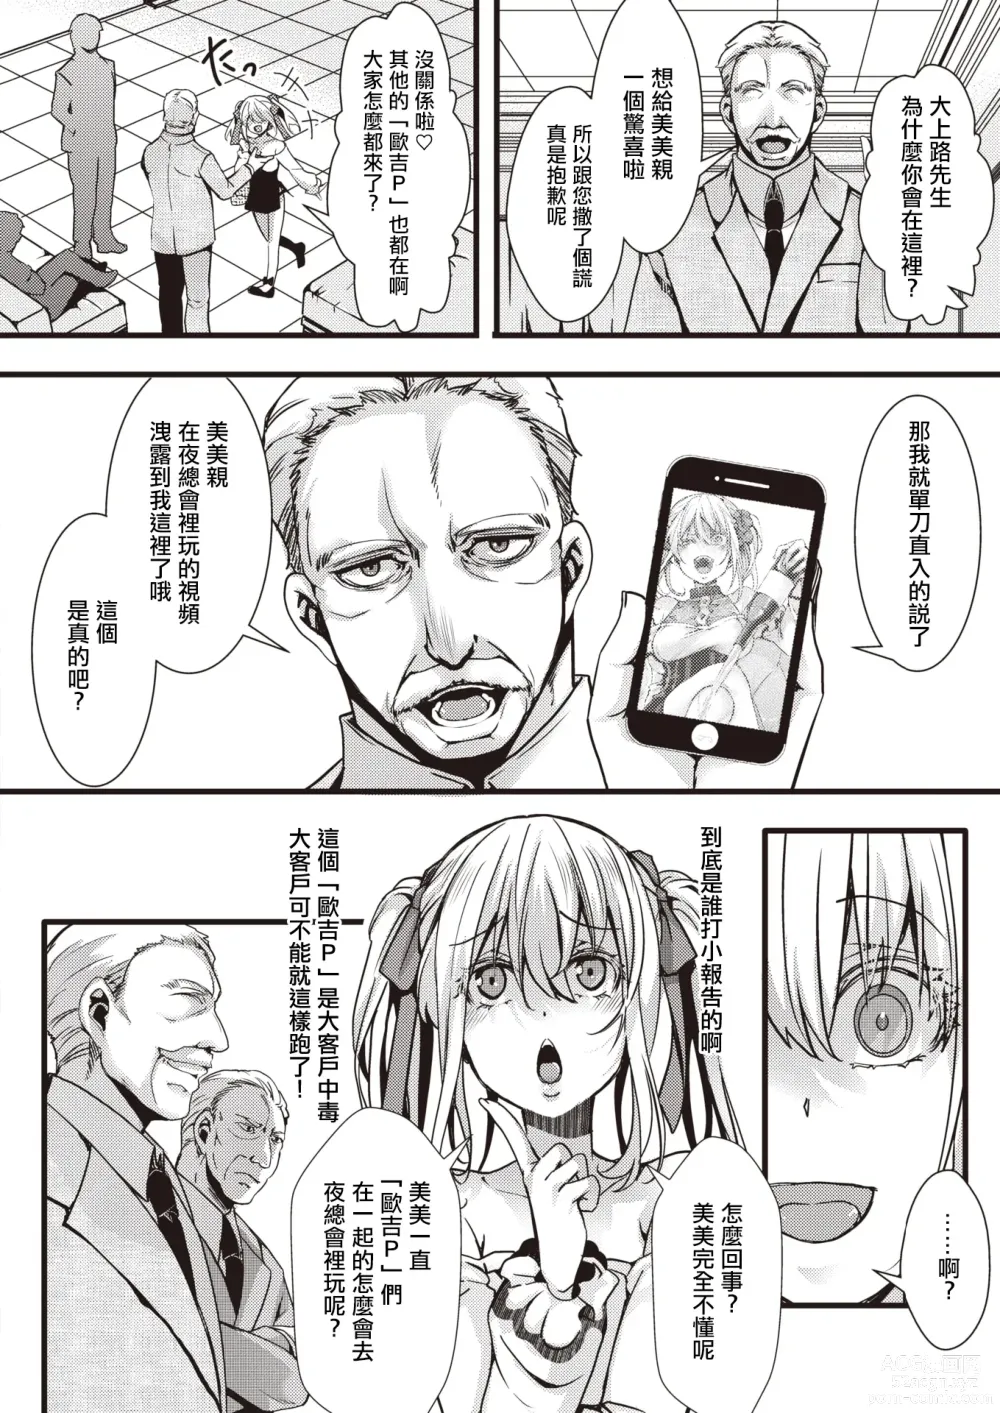 Page 6 of manga [惡貫滿盈] 貪婪女王美美親vs激怒大叔聯盟